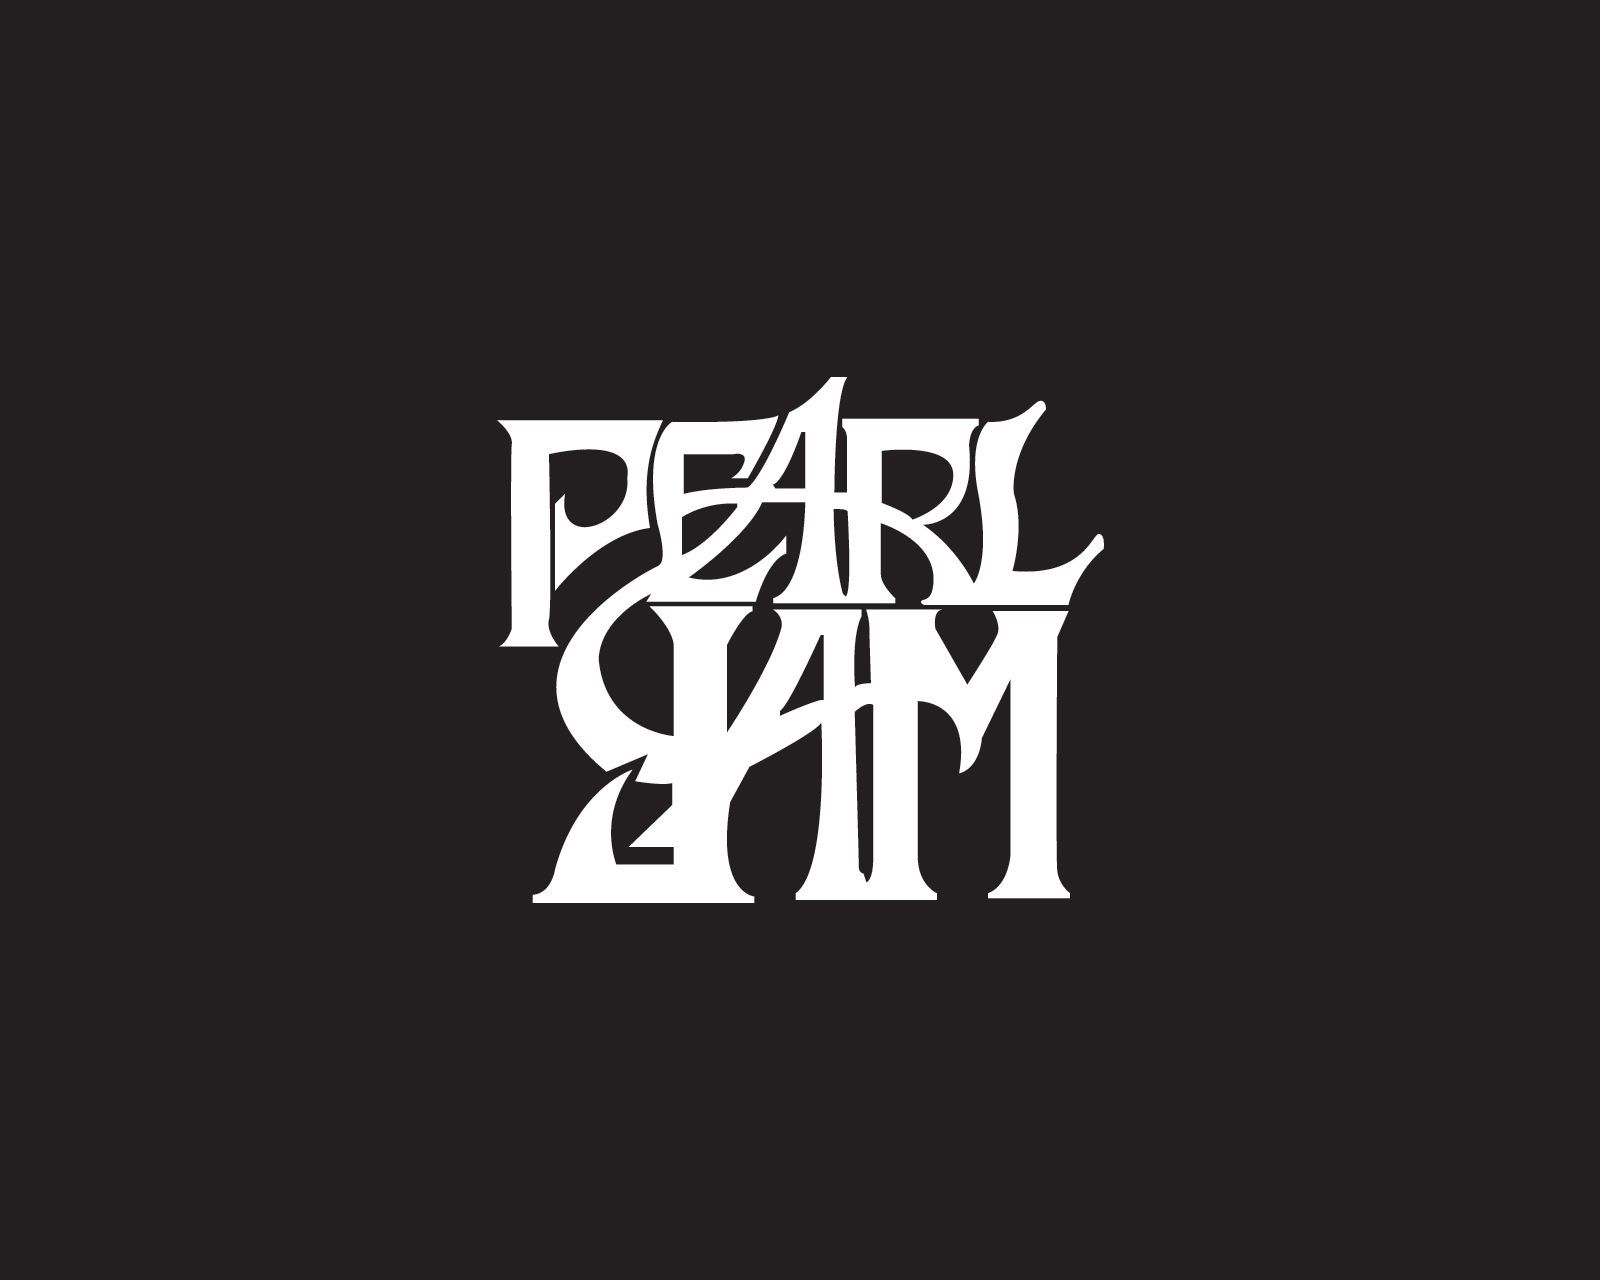 Pearl Jam Computer Wallpapers Desktop Backgrounds 1600x1280 ID